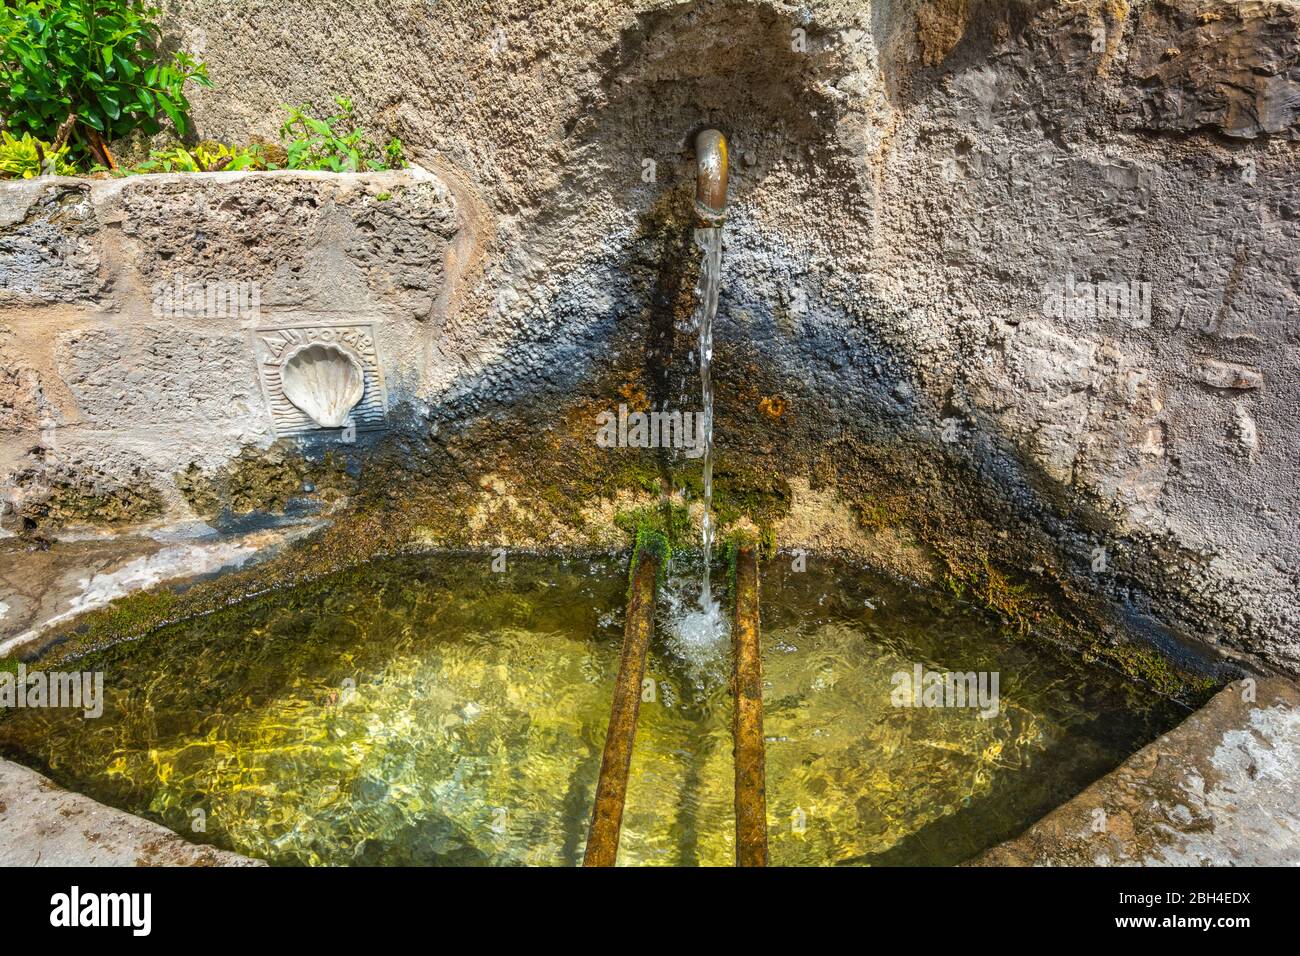 France, Saint-Guilhem-le-Desert, sign marks a potable water fountain on the route of St. James (Jacques) to Santiago de Compostella (Compostelle) Stock Photo